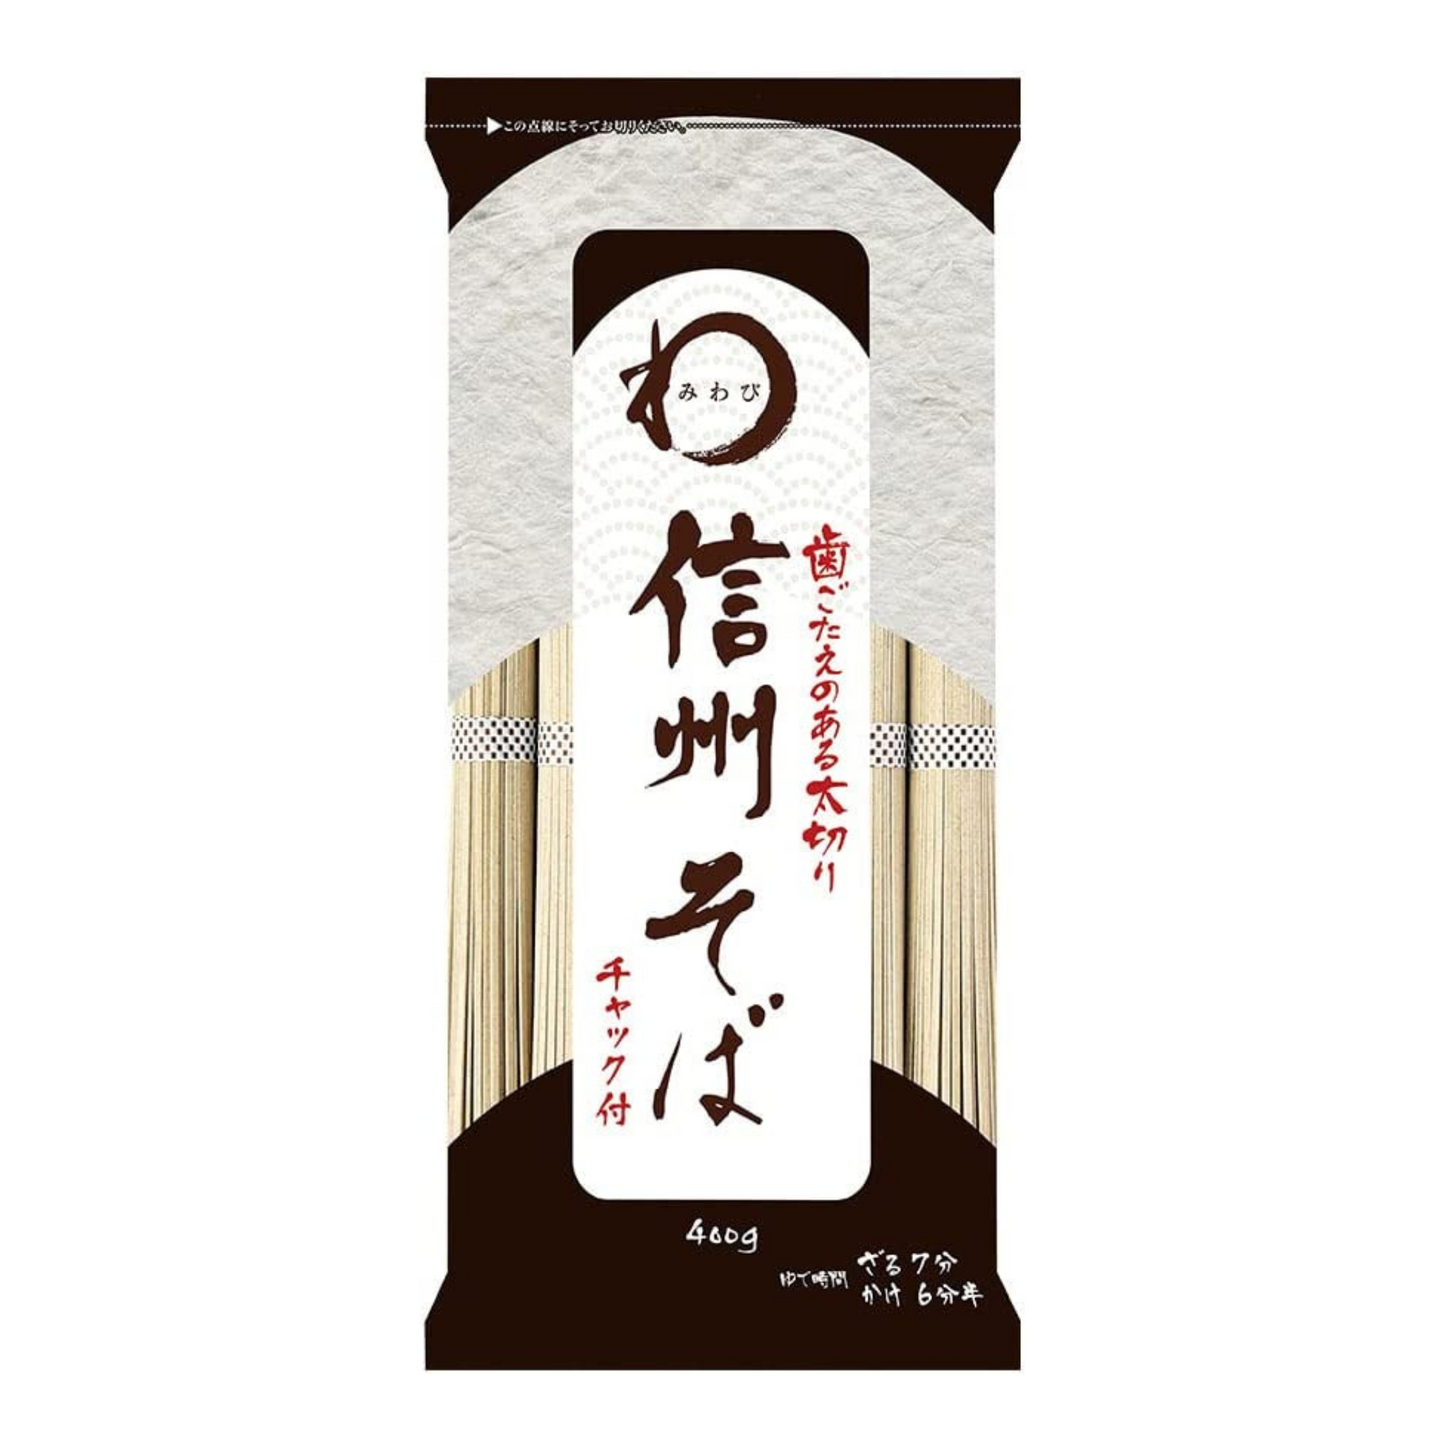 Shinshu Soba Noodles